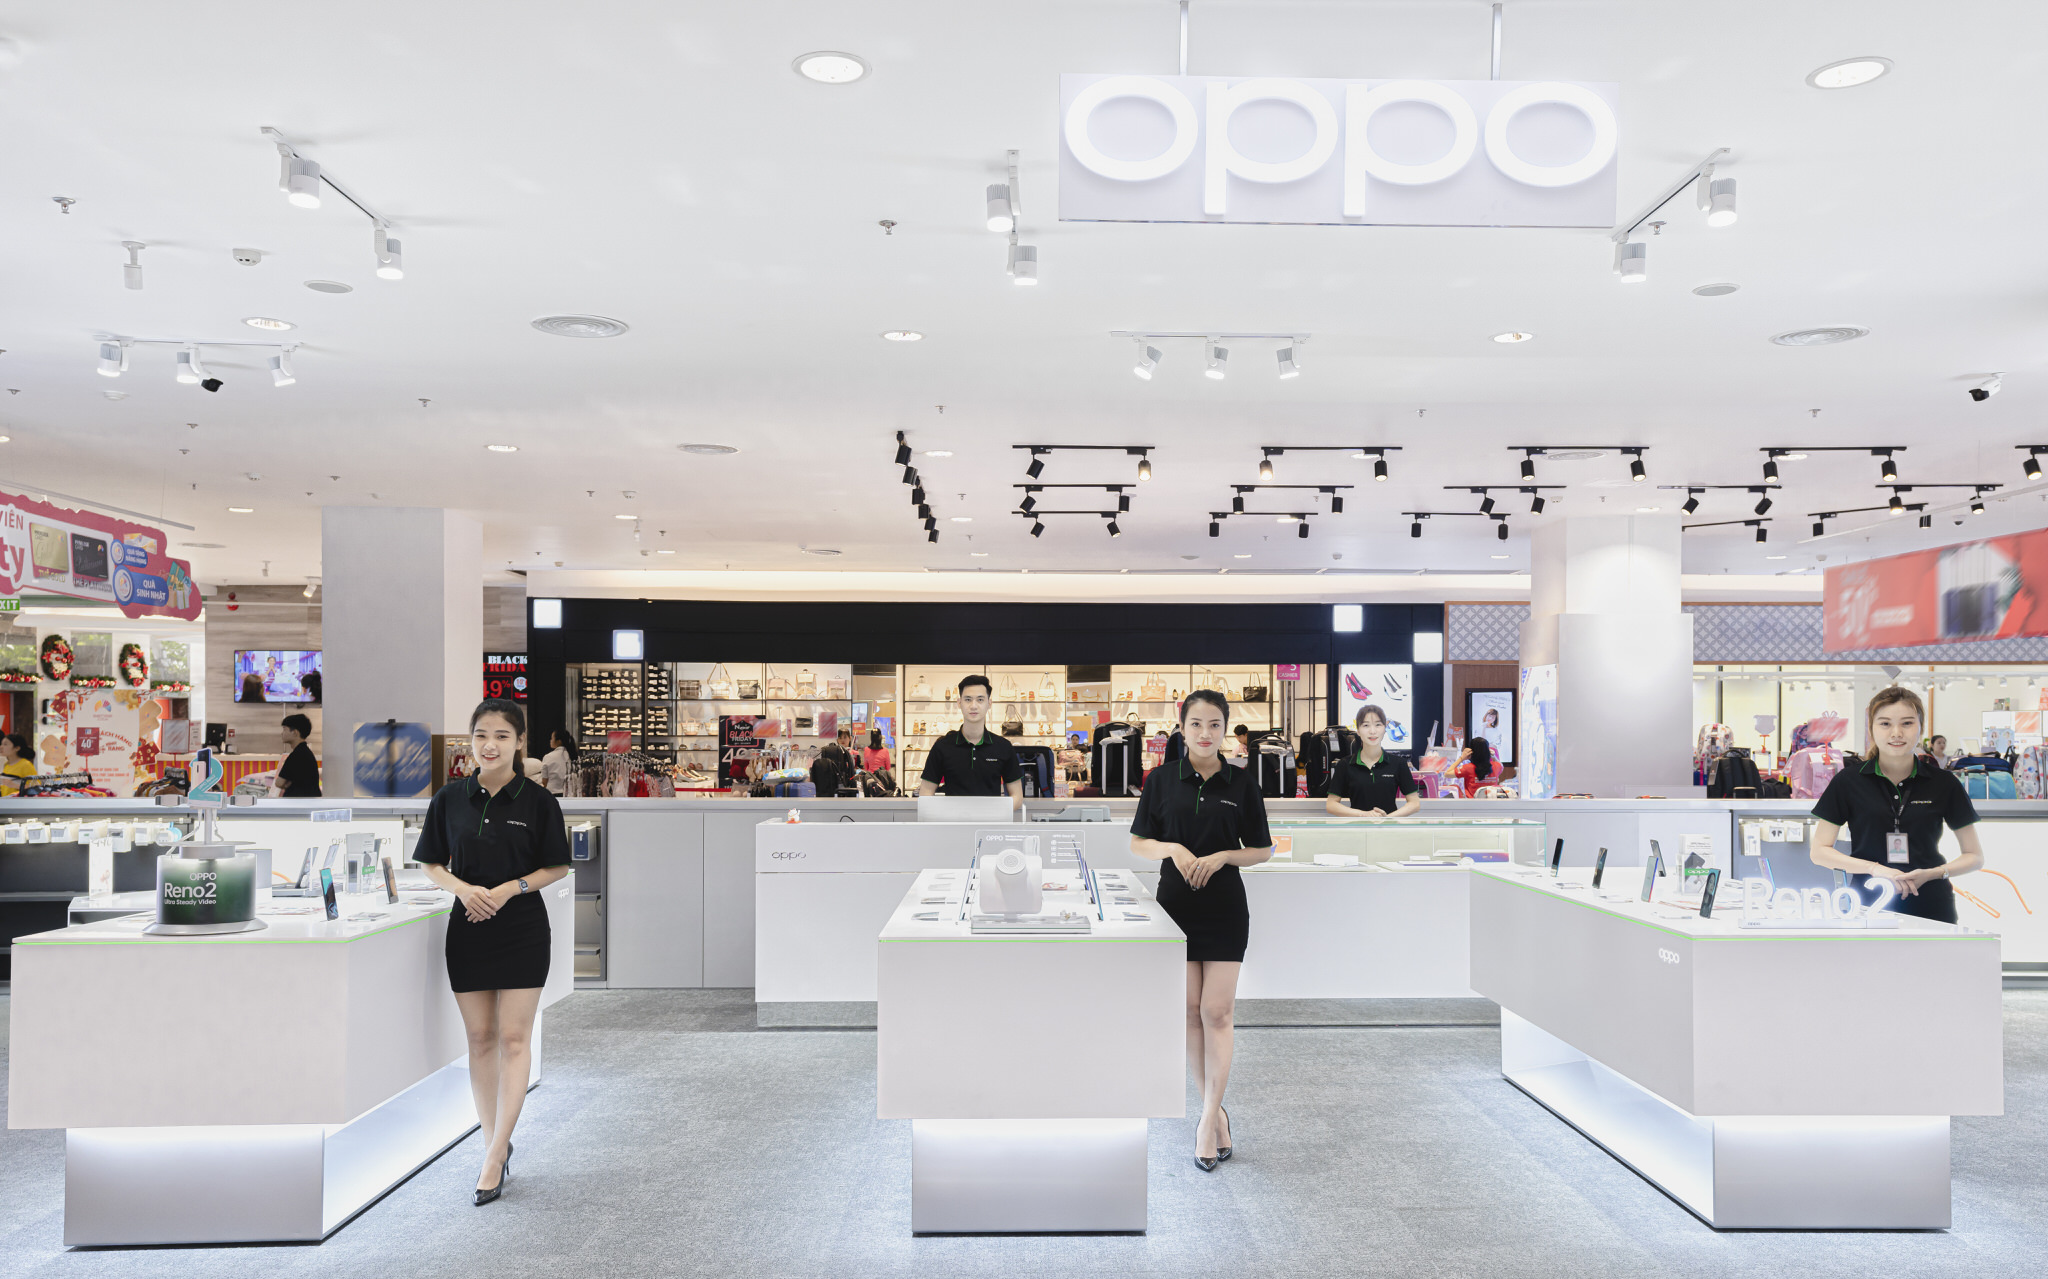 OPPO khai trương cửa hàng trải nghiệm phiên bản 3.0 tại Sense City tăng cường trải nghiệm cho người dùng